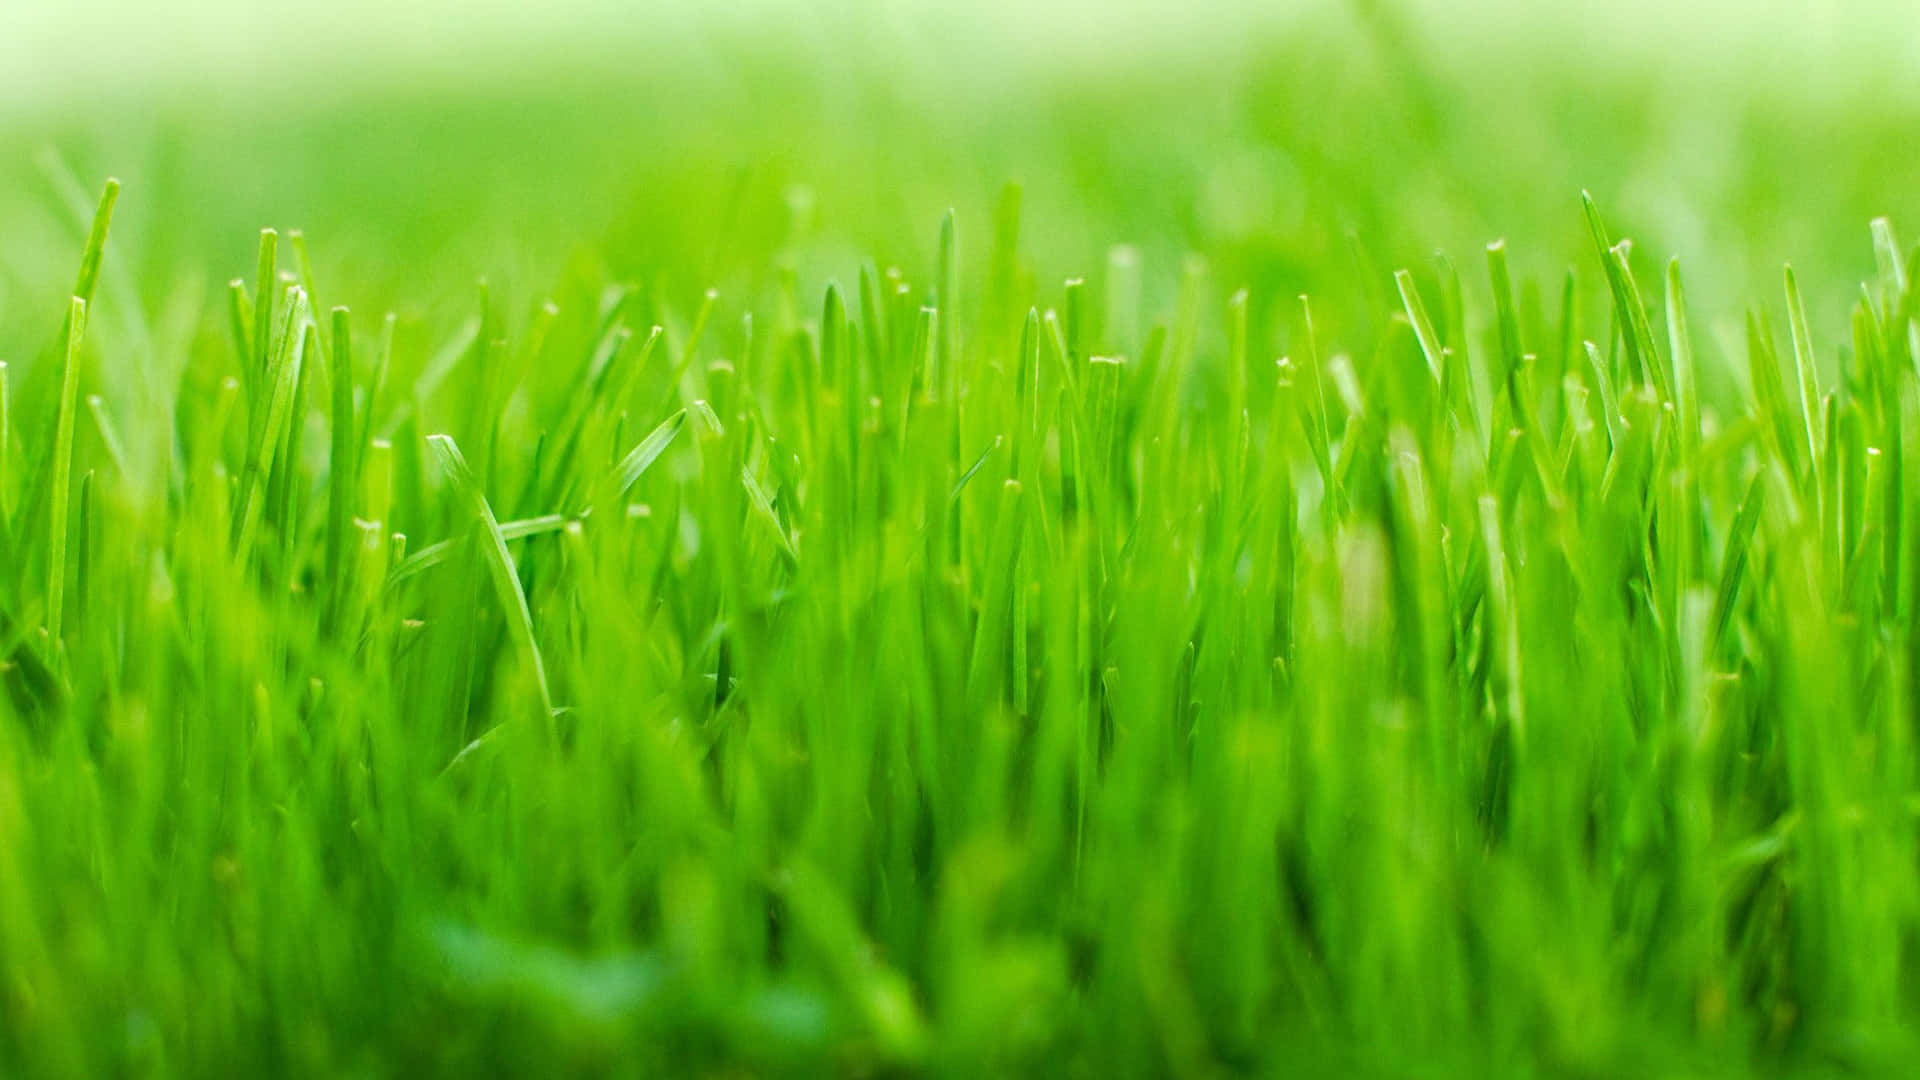 100 Green Grass Backgrounds 